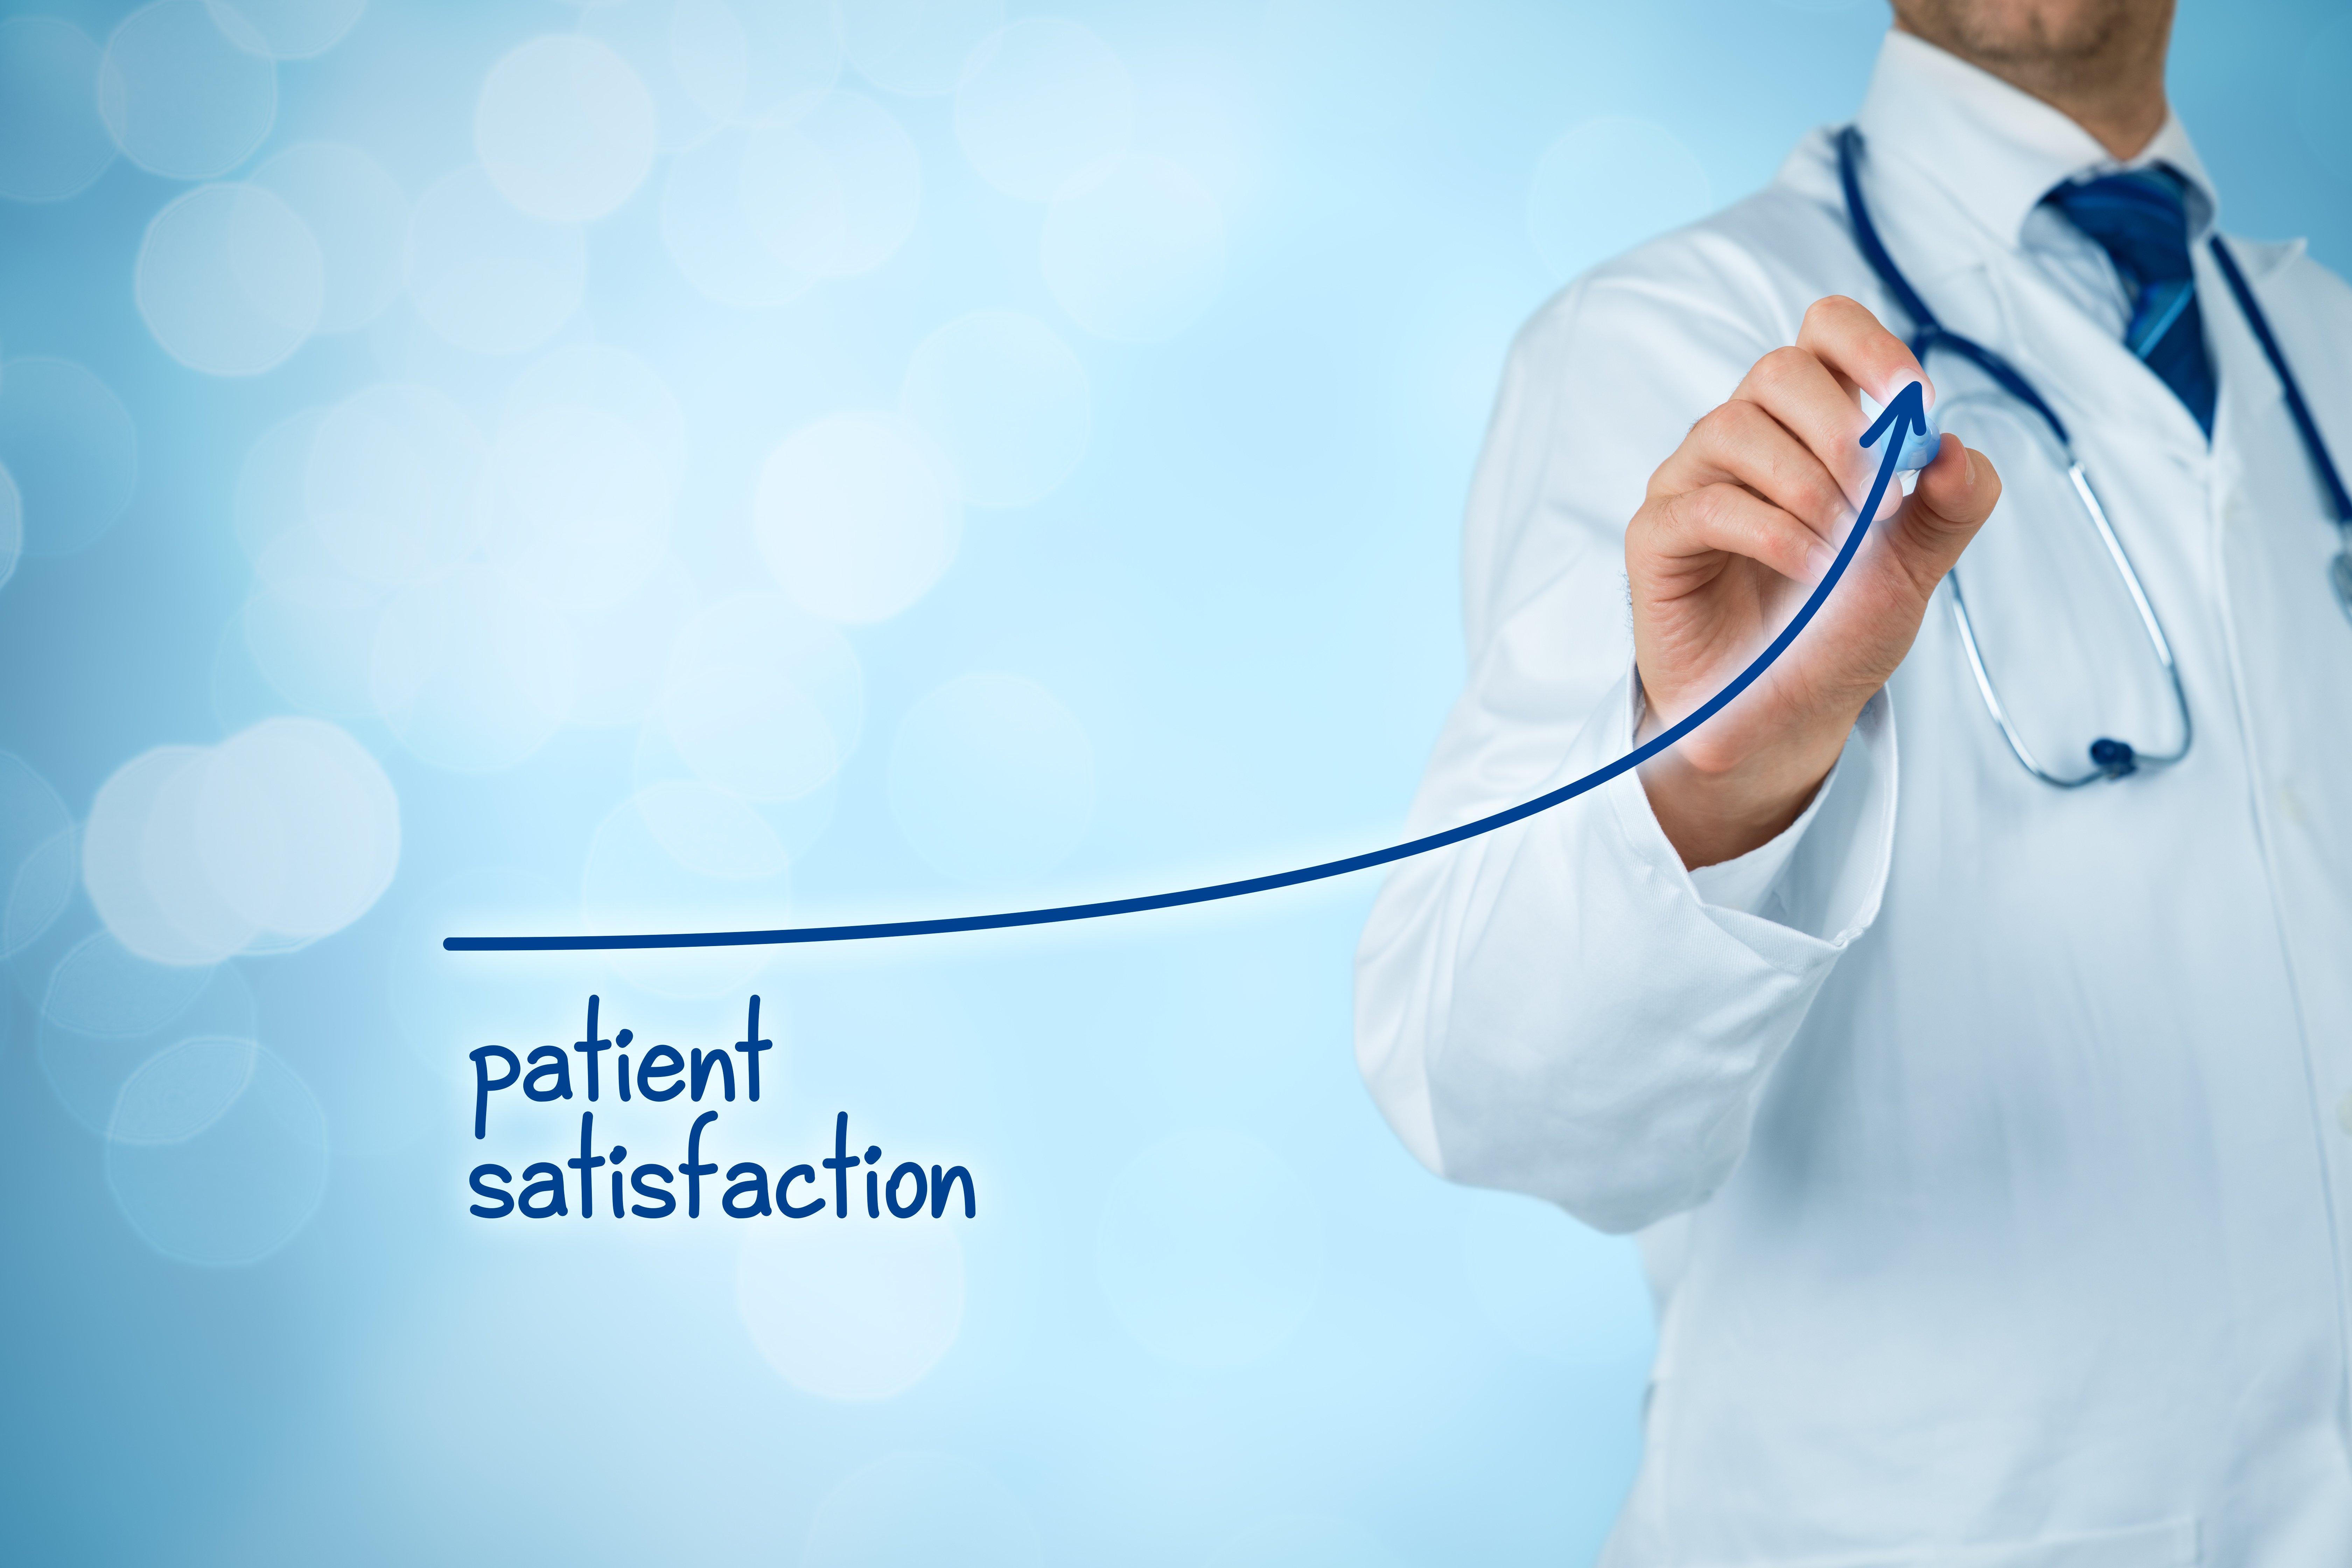 6 drivers of patient satisfaction